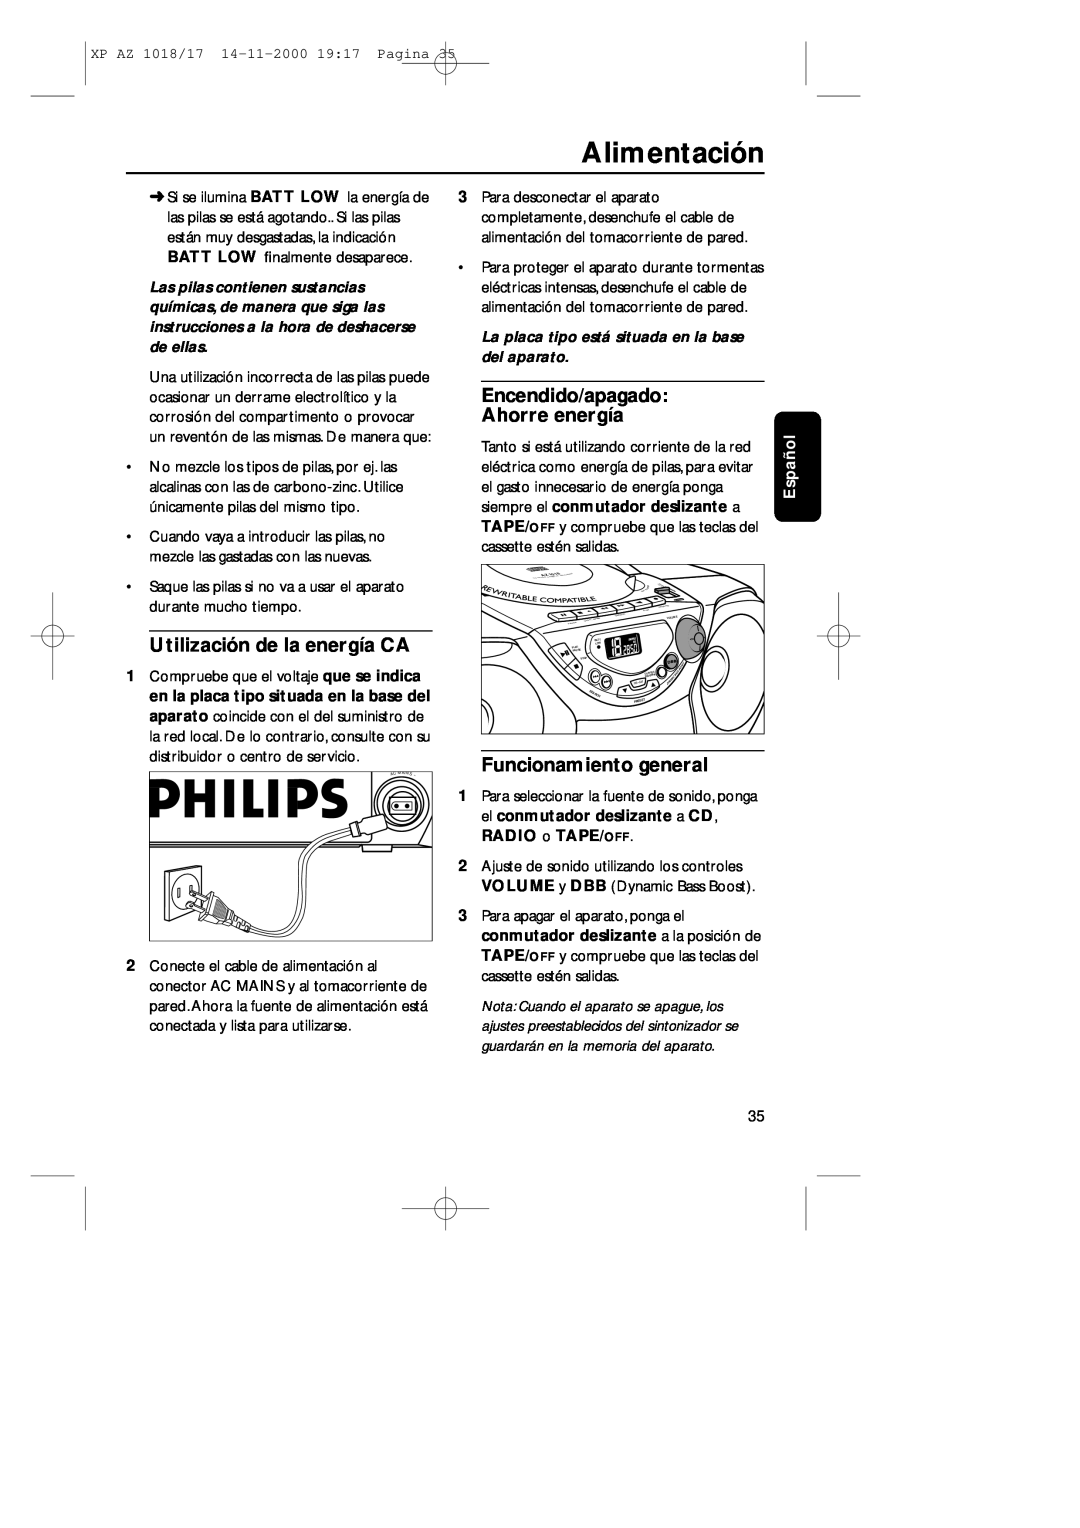 Philips 1018 Encendido/apagado Ahorre energía, Utilización de la energía CA, Funcionamiento general, Alimentación, Español 